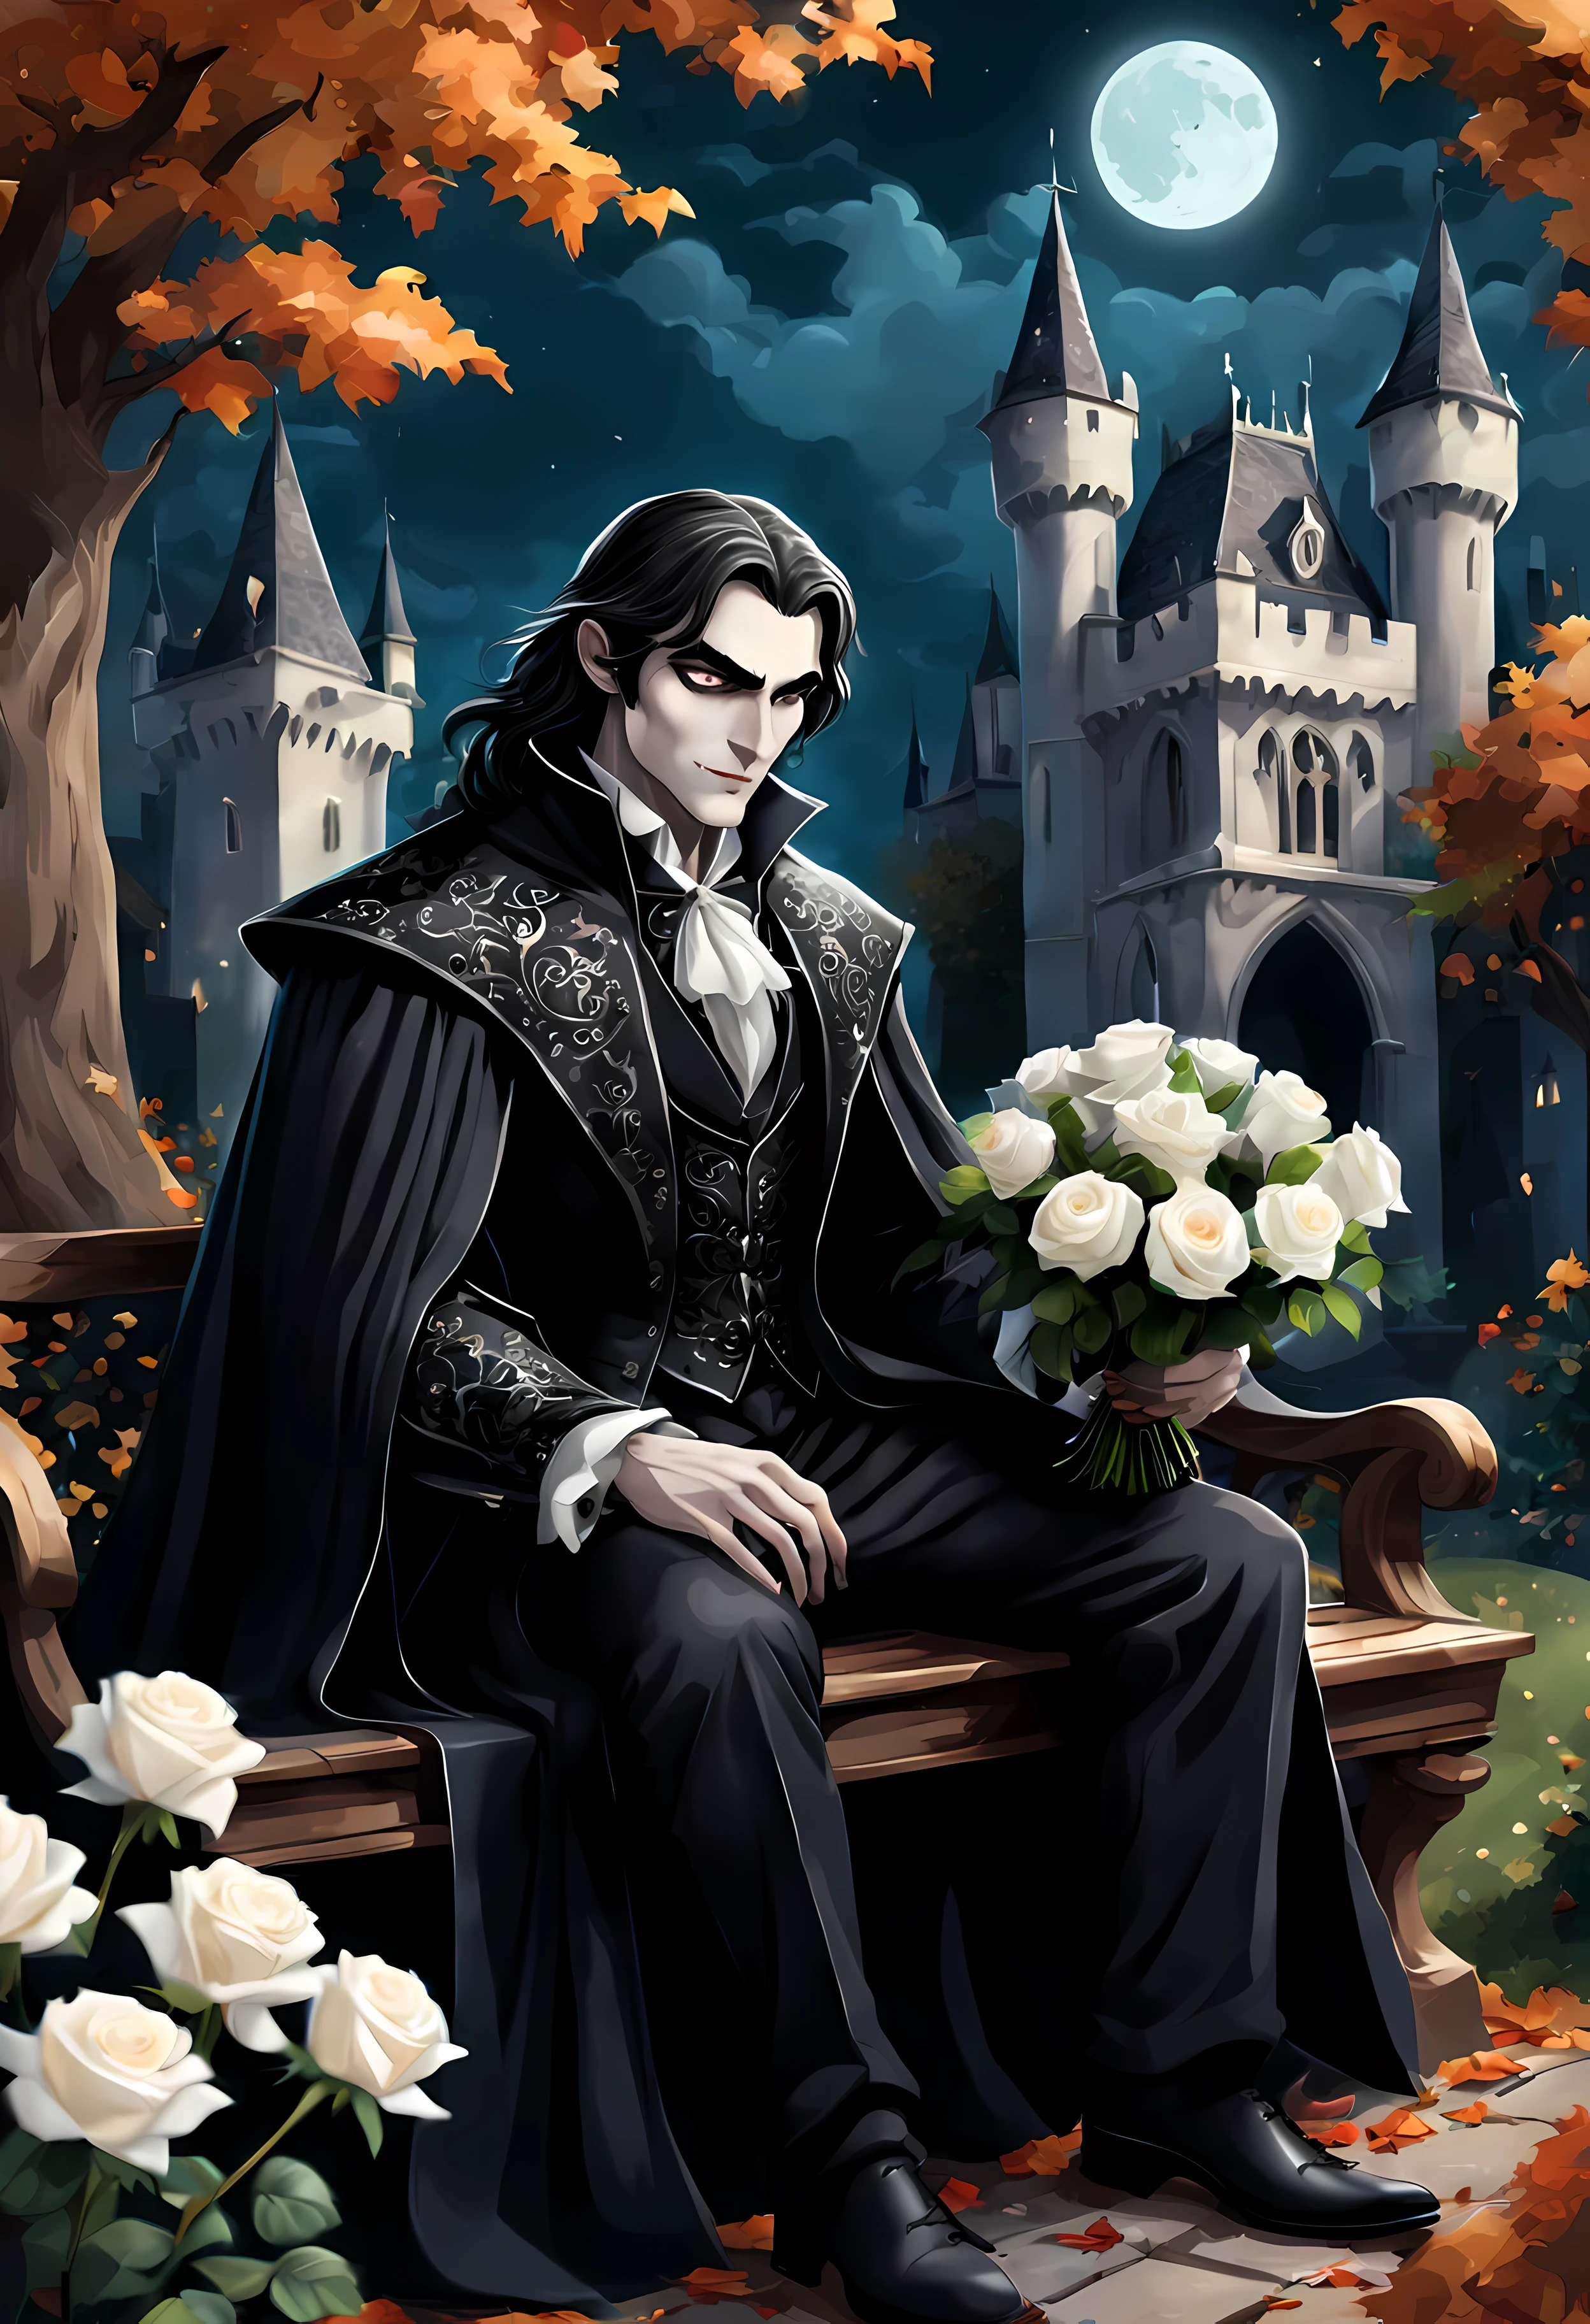 manos perfectas, Obra maestra en resolución máxima de 16K, (lindo estilo de dibujos animados:1.3), a (((solo))) ((de cerca)) de un vampiro guapo (male) sentado en un elegante banco en un jardín otoñal iluminado por la luna, ((patrones góticos ricos y complejos)), el vampiro lleva un vestido elegante y fluido, Él tiene (ojos verdes vivos), y pelo largo y negro, ((sosteniendo un ramo de rosas blancas en sus manos)), castillo gótico al fondo. | ((más_detalle))